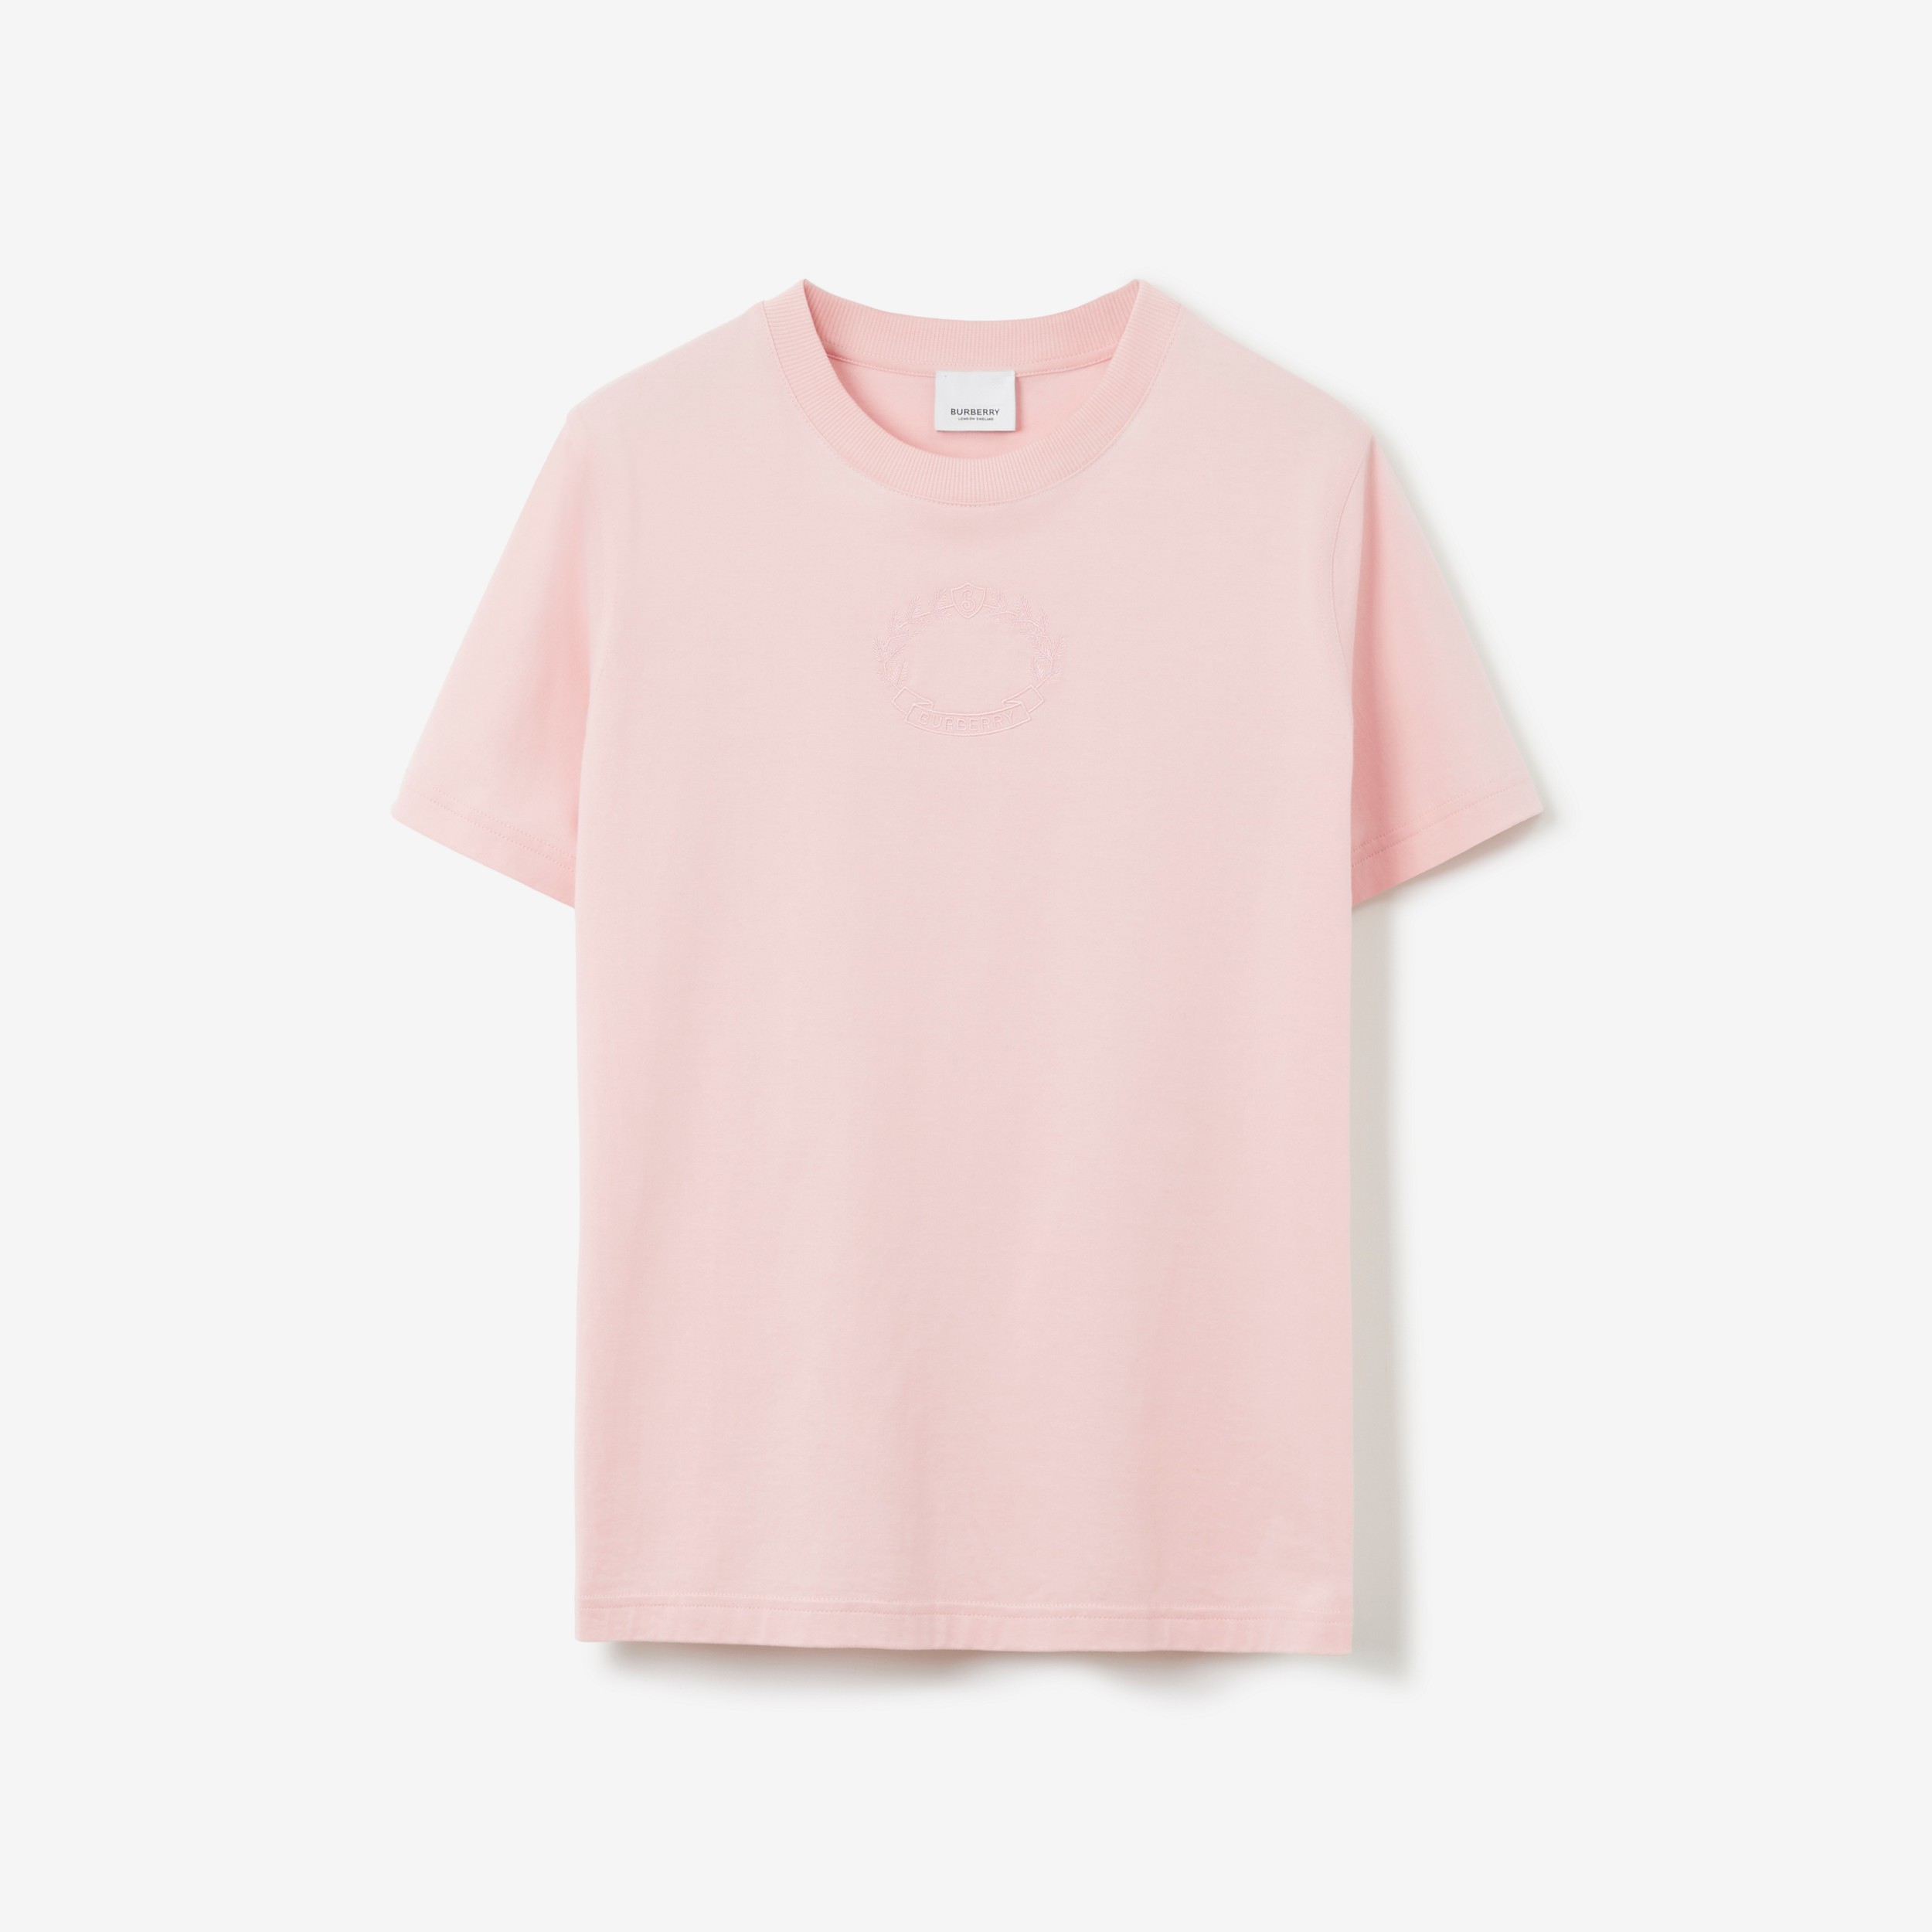 T-shirt in cotone con stemma con foglie di quercia (Rosa Tenue) - Donna | Sito ufficiale Burberry® - 1